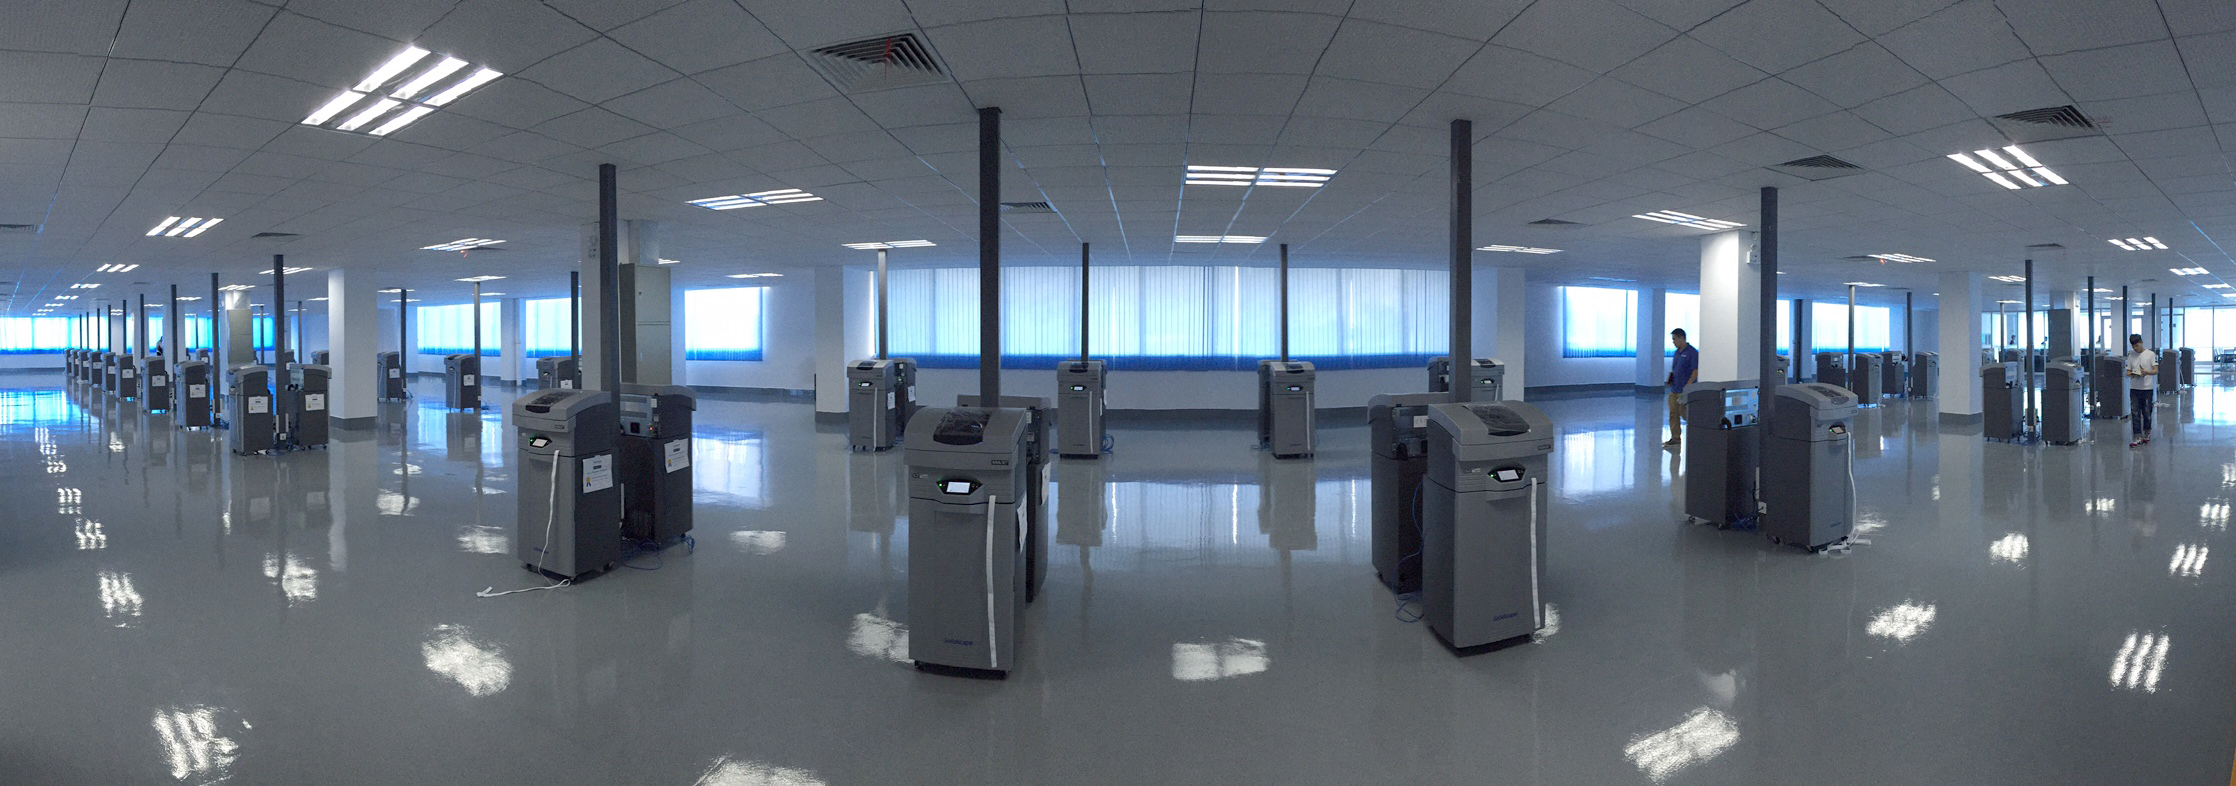 3D Printing Service Bureau Prescott - 3D Printing Services Prescott - 3D  Print Service Bureau Prescott